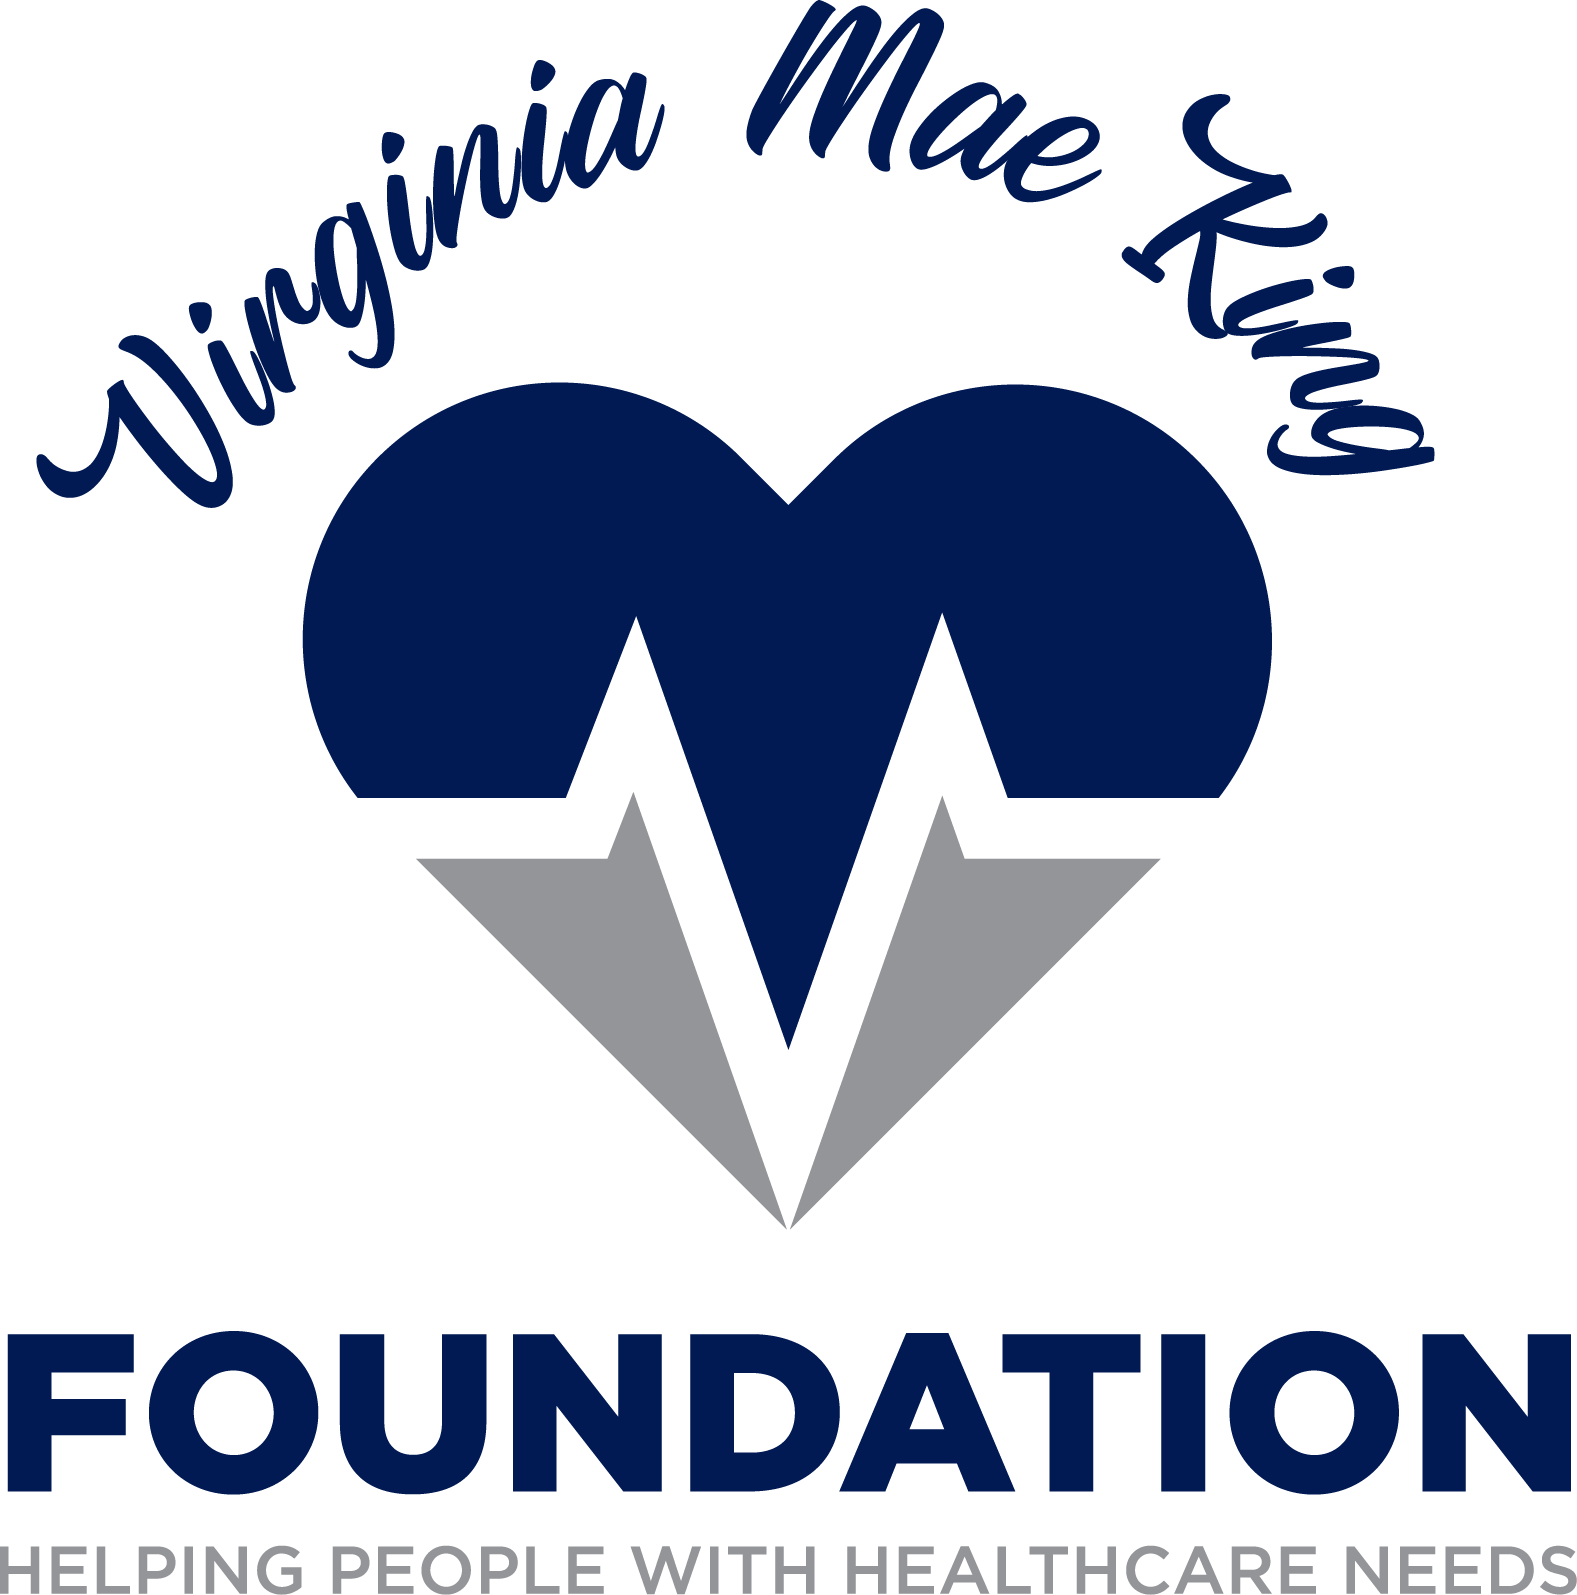 Virginia Mae King Foundation